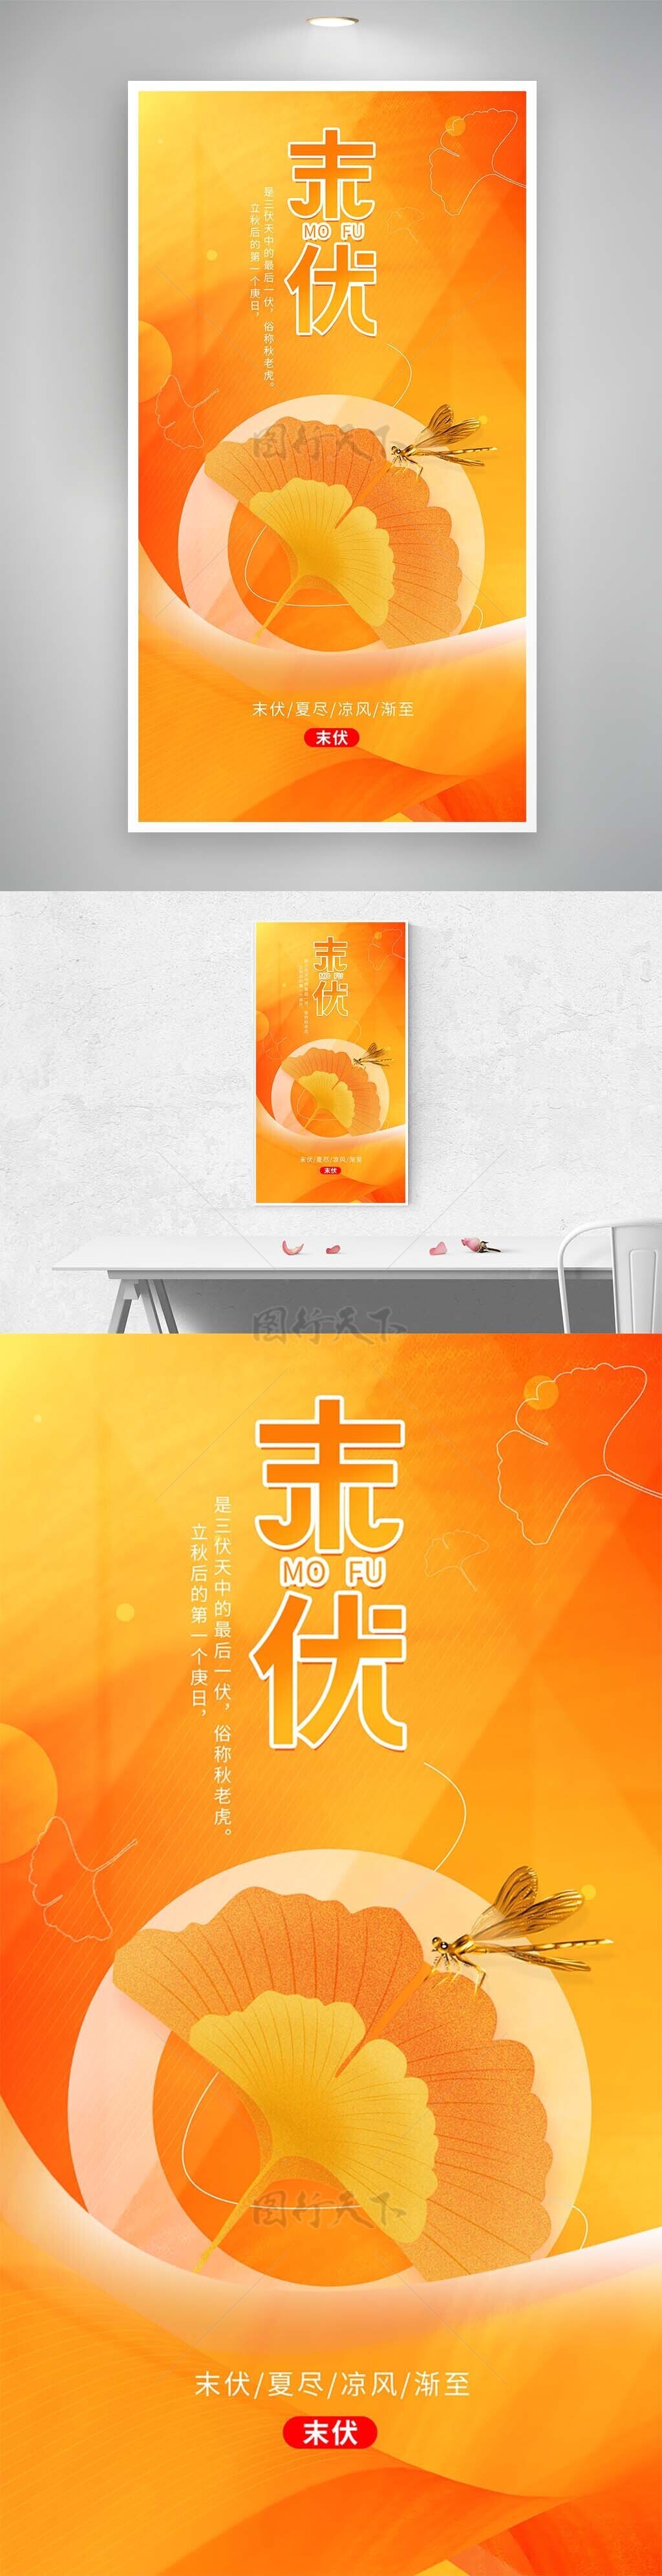 末伏时节橙色银杏主视觉海报设计